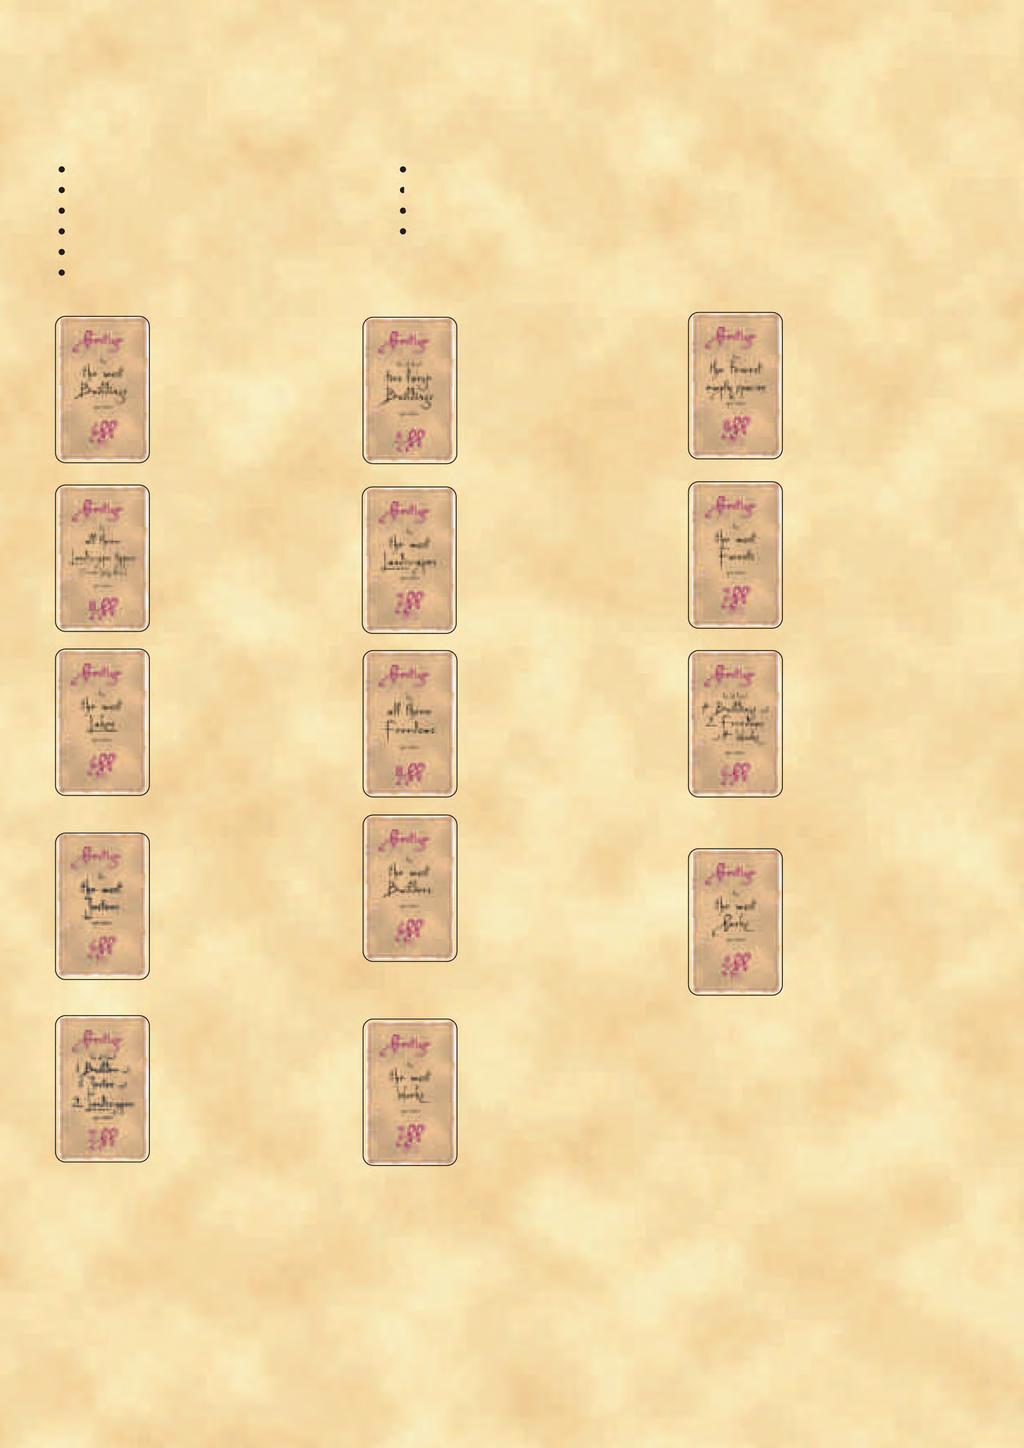 Περίληψη των14 διαφορετικών καρτών Κύρους Κάτω από την περιγραφή κάθε κάρτας, υπάρχει ένα παράδειγμα τιμής της, θεωρώντας ότι ο παίκτης που έχει την κάρτα στο τέλος του παιχνιδιού έχει τα παρακάτω